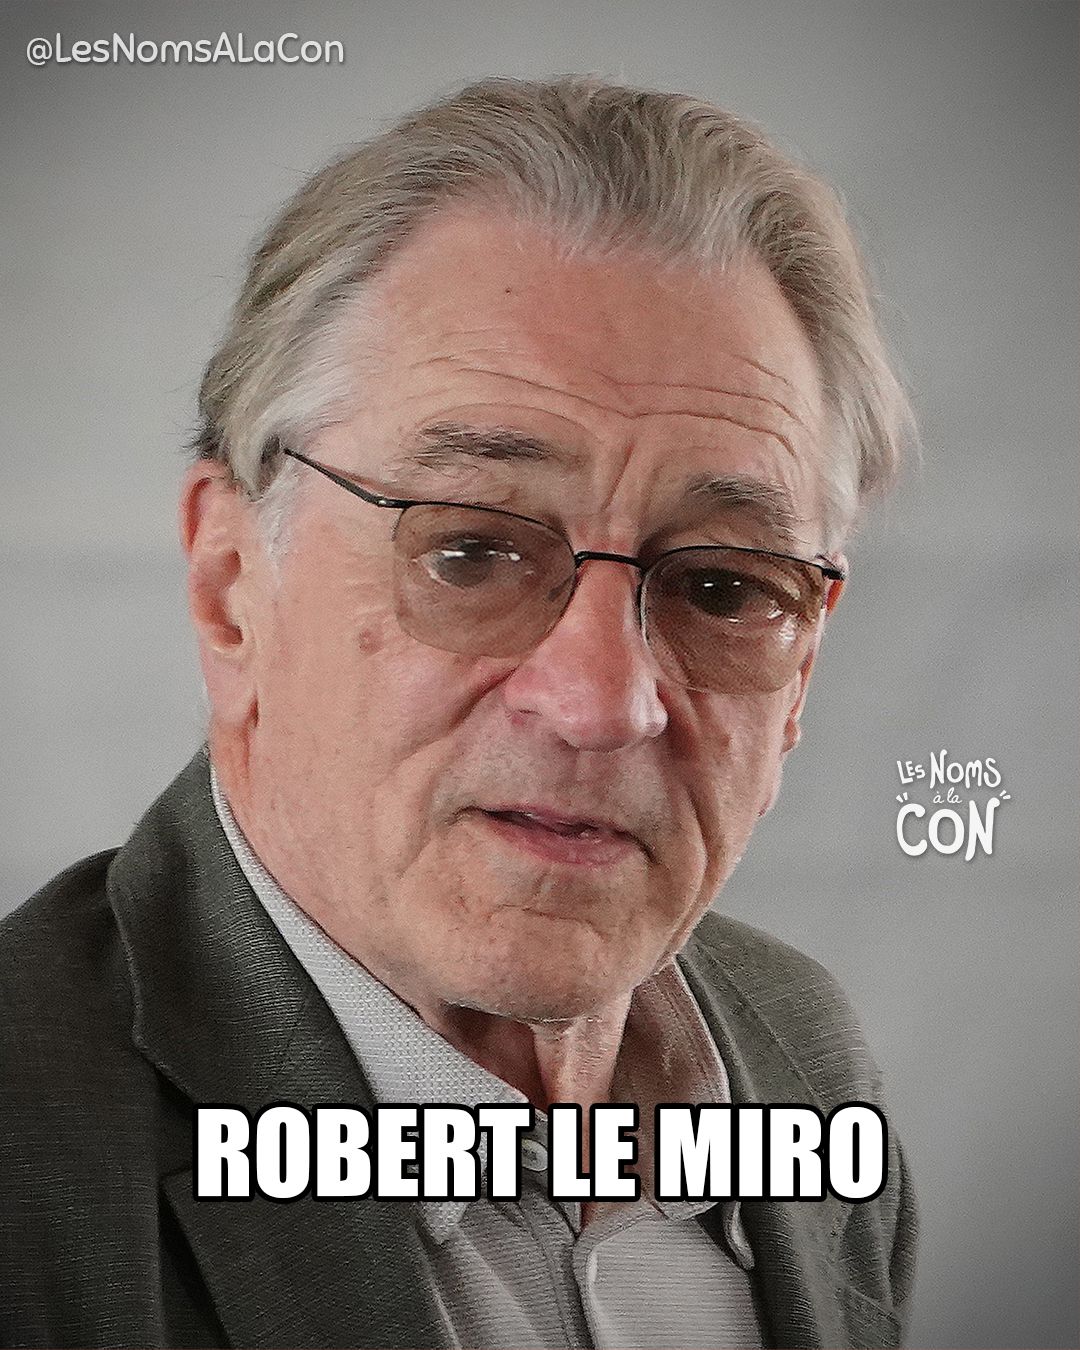 Robert le Miro